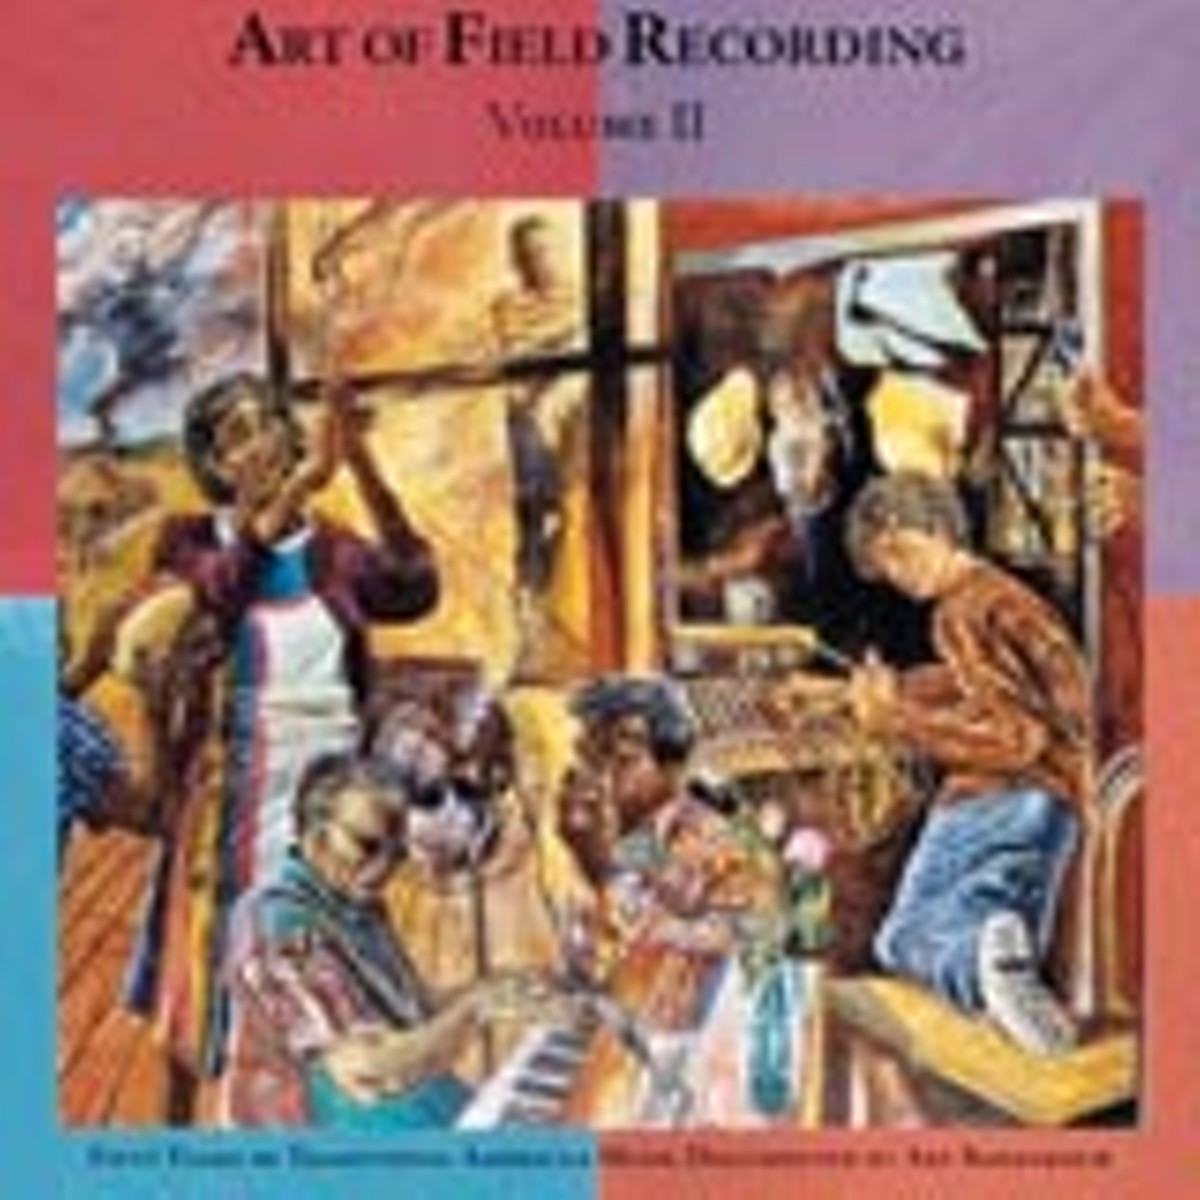 Art of Field Recording, Vol. II